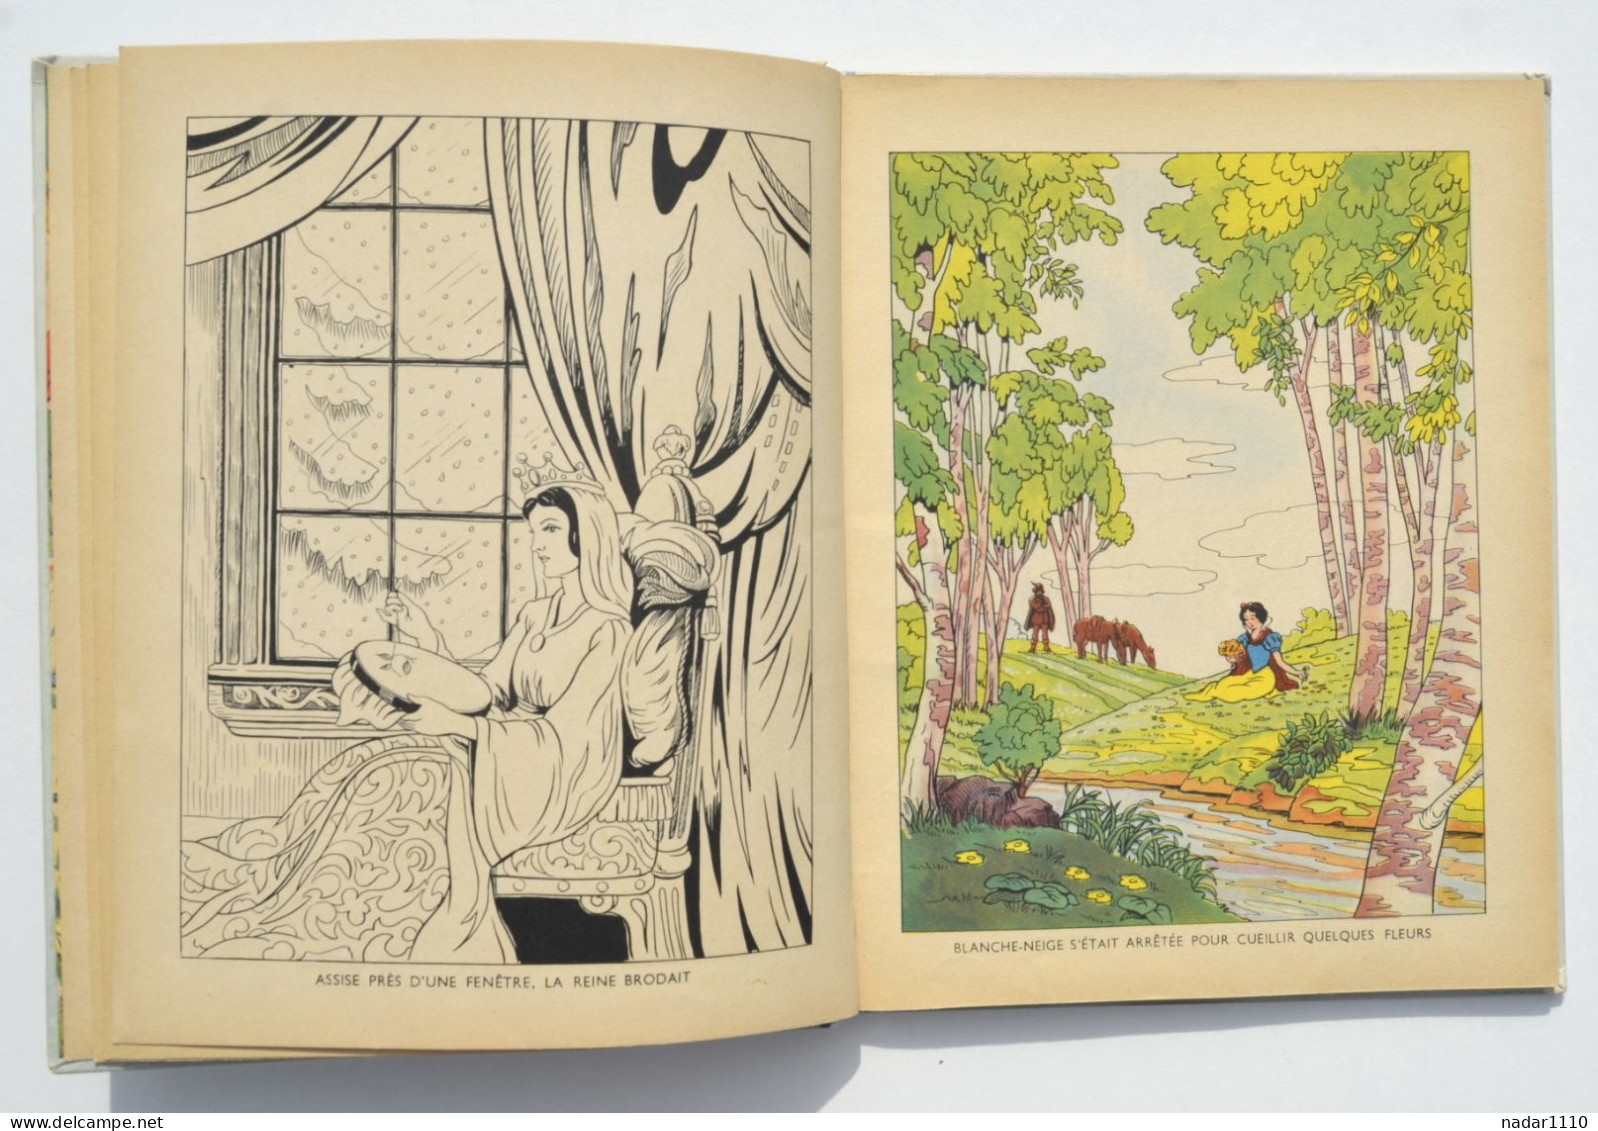 Enfantina / Blanche-Neige Et Les Septs Nains - Walt Disney - Hachette, EO 1938 - Disney